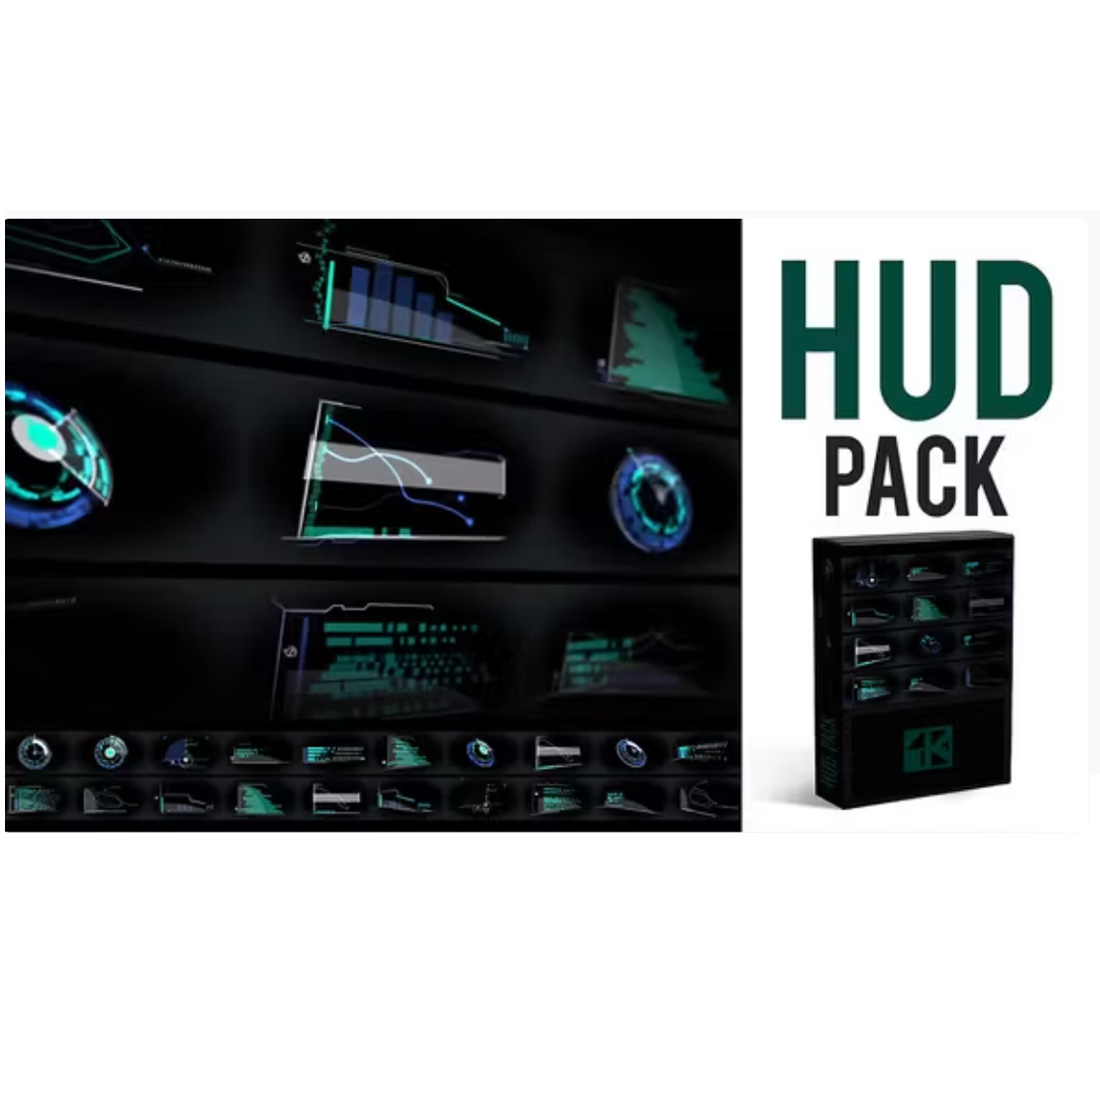 HUD Pack 4K cover image.